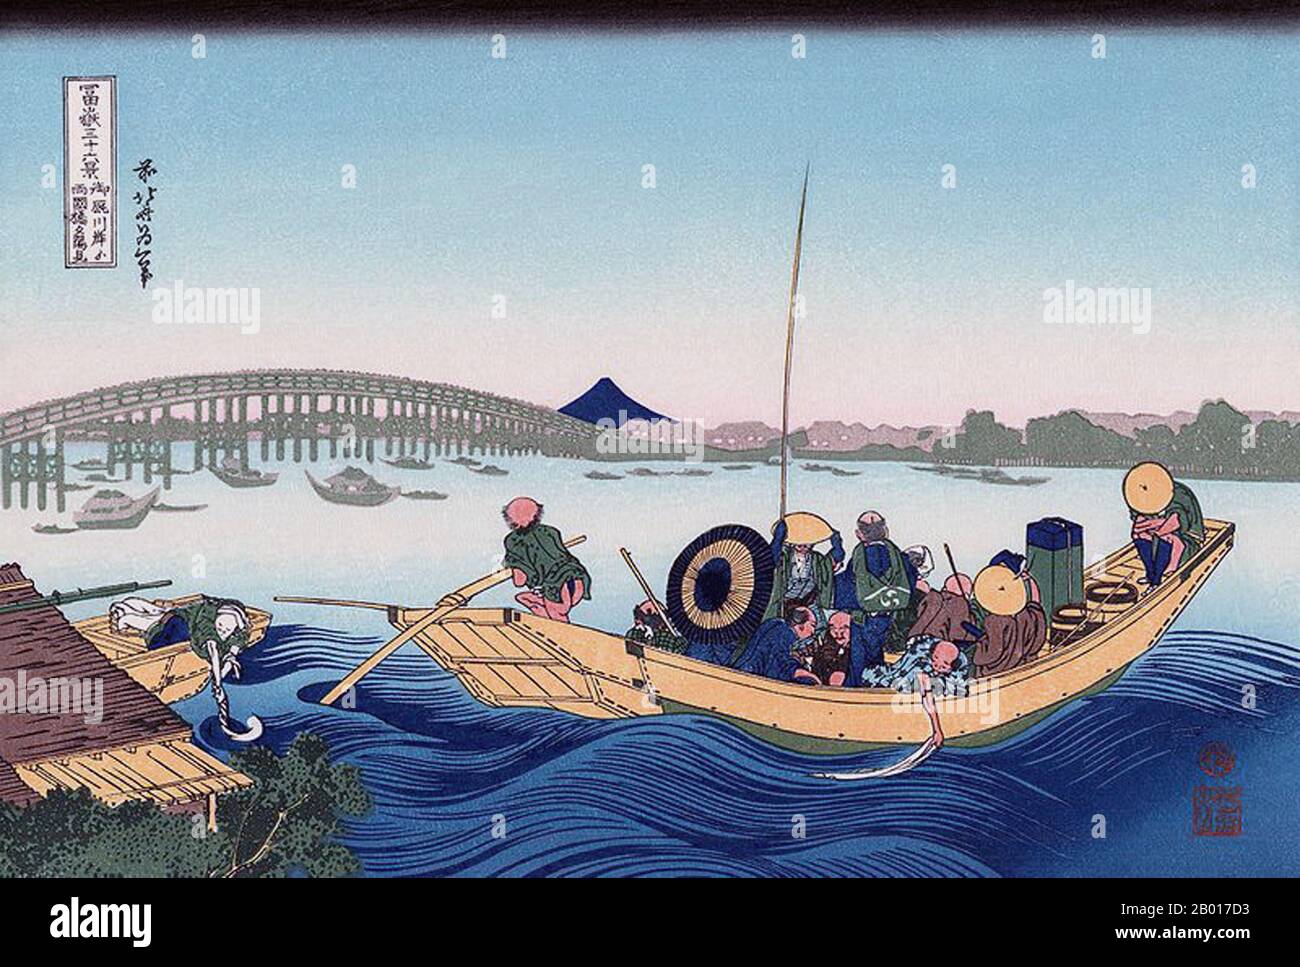 Japan: ‘Sonnenuntergang über der Ryogoku-Brücke vom Ufer des Sumida-Flusses bei Onmayagashi'. Ukiyo-e Holzschnitt aus der Serie ‘Thirty-Six views of Mount Fuji’ von Katsushika Hokusai (31. Oktober 1760 - 10. Mai 1849), 1830. ‘Thirty-Six Views of Mount Fuji’ ist eine Serie von Holzschnitten der japanischen Künstlerin Katsushika Hokusai, die „Sukiyo-e“ ‘. Die Serie zeigt den Fuji in unterschiedlichen Jahreszeiten und Wetterbedingungen an verschiedenen Orten und Entfernungen. Es besteht tatsächlich aus 46 Drucken, die zwischen 1826 und 1833 entstanden sind. Die ersten 36 wurden in die ursprüngliche Publikation aufgenommen und 10 weitere wurden hinzugefügt. Stockfoto